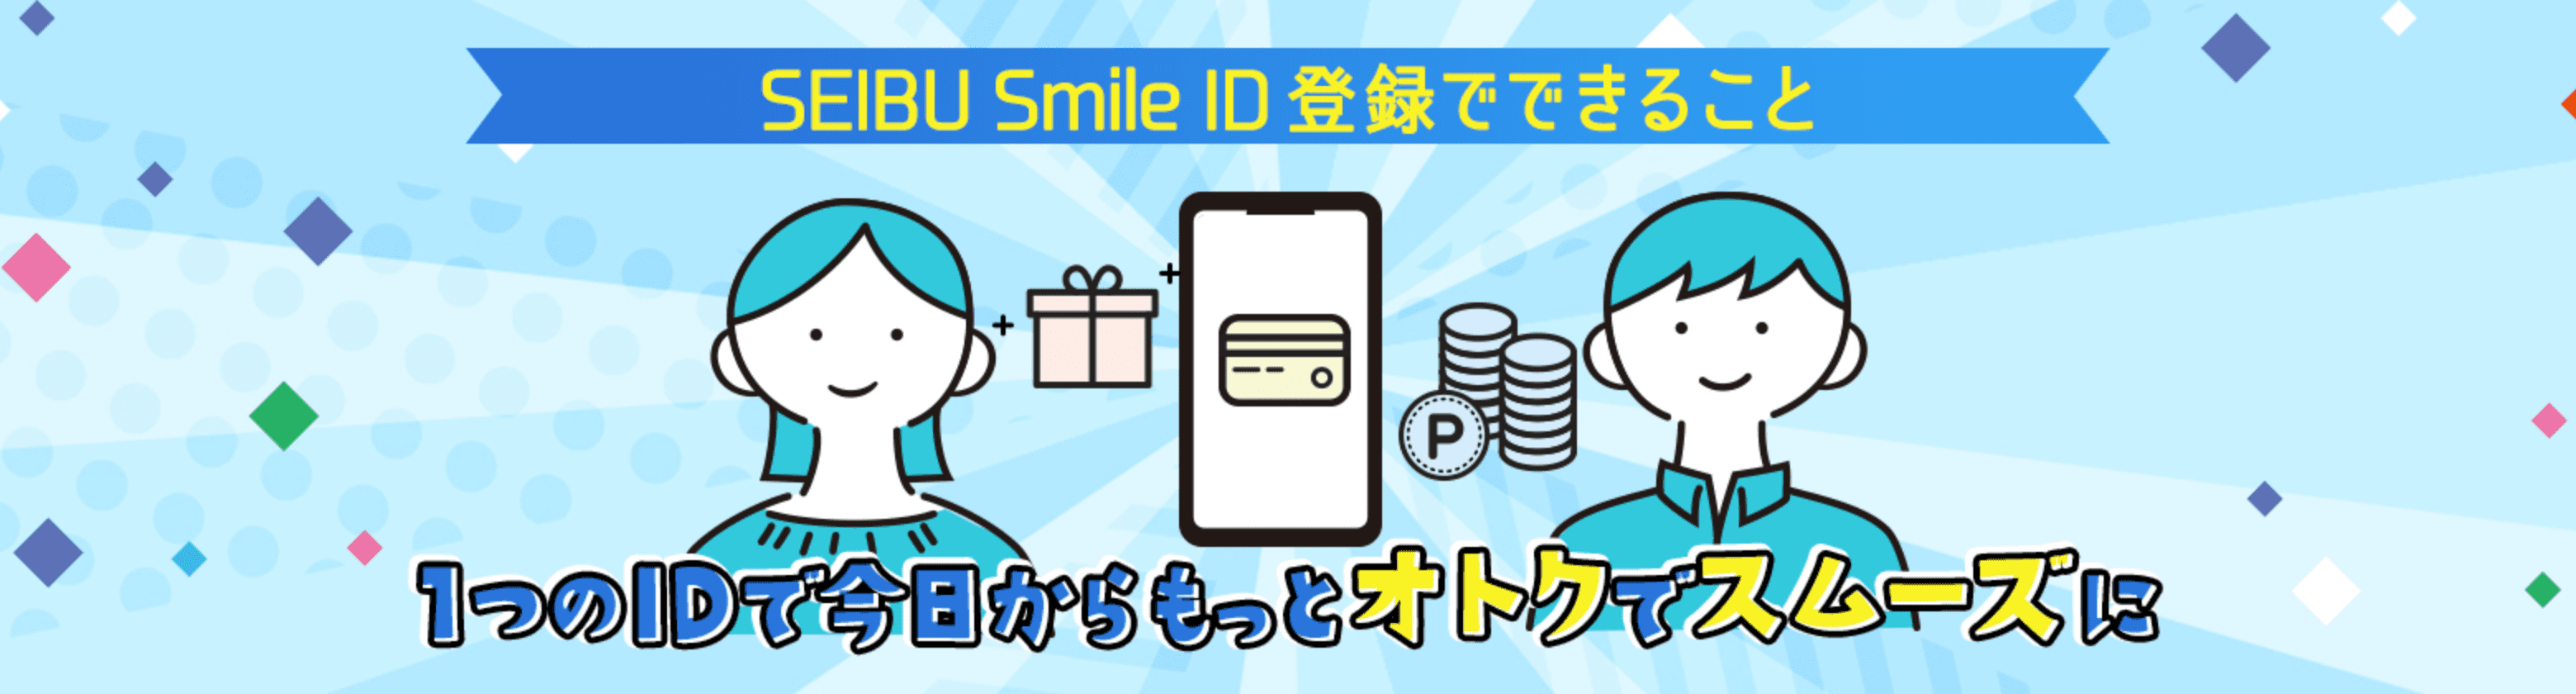 SEIBU Smile ID 登録でできること